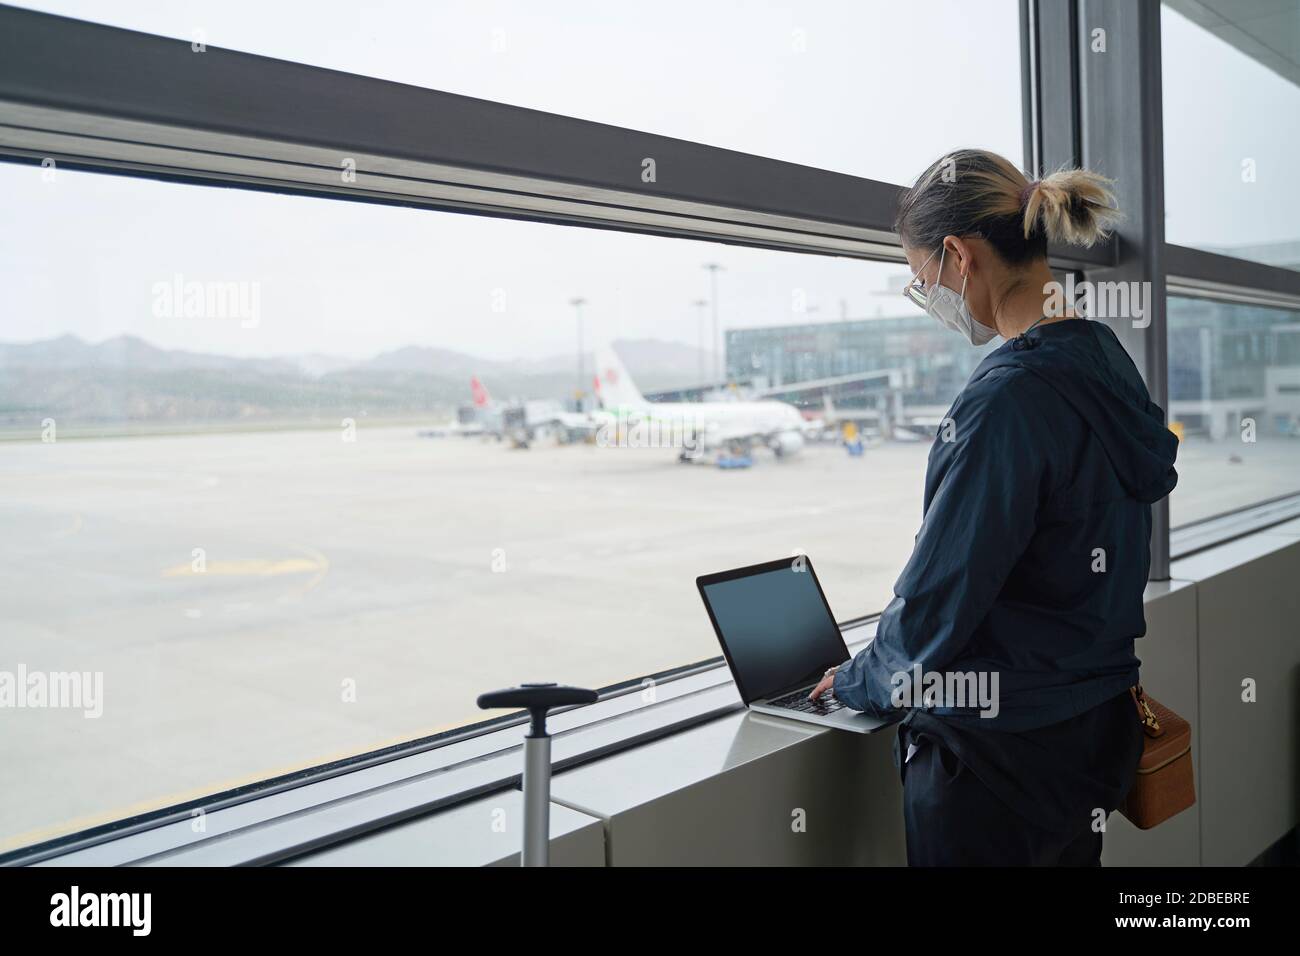 jeune femme asiatique voyageur aérien utilisant un ordinateur portable en attendant pour l'embarquement dans le terminal de l'aéroport Banque D'Images